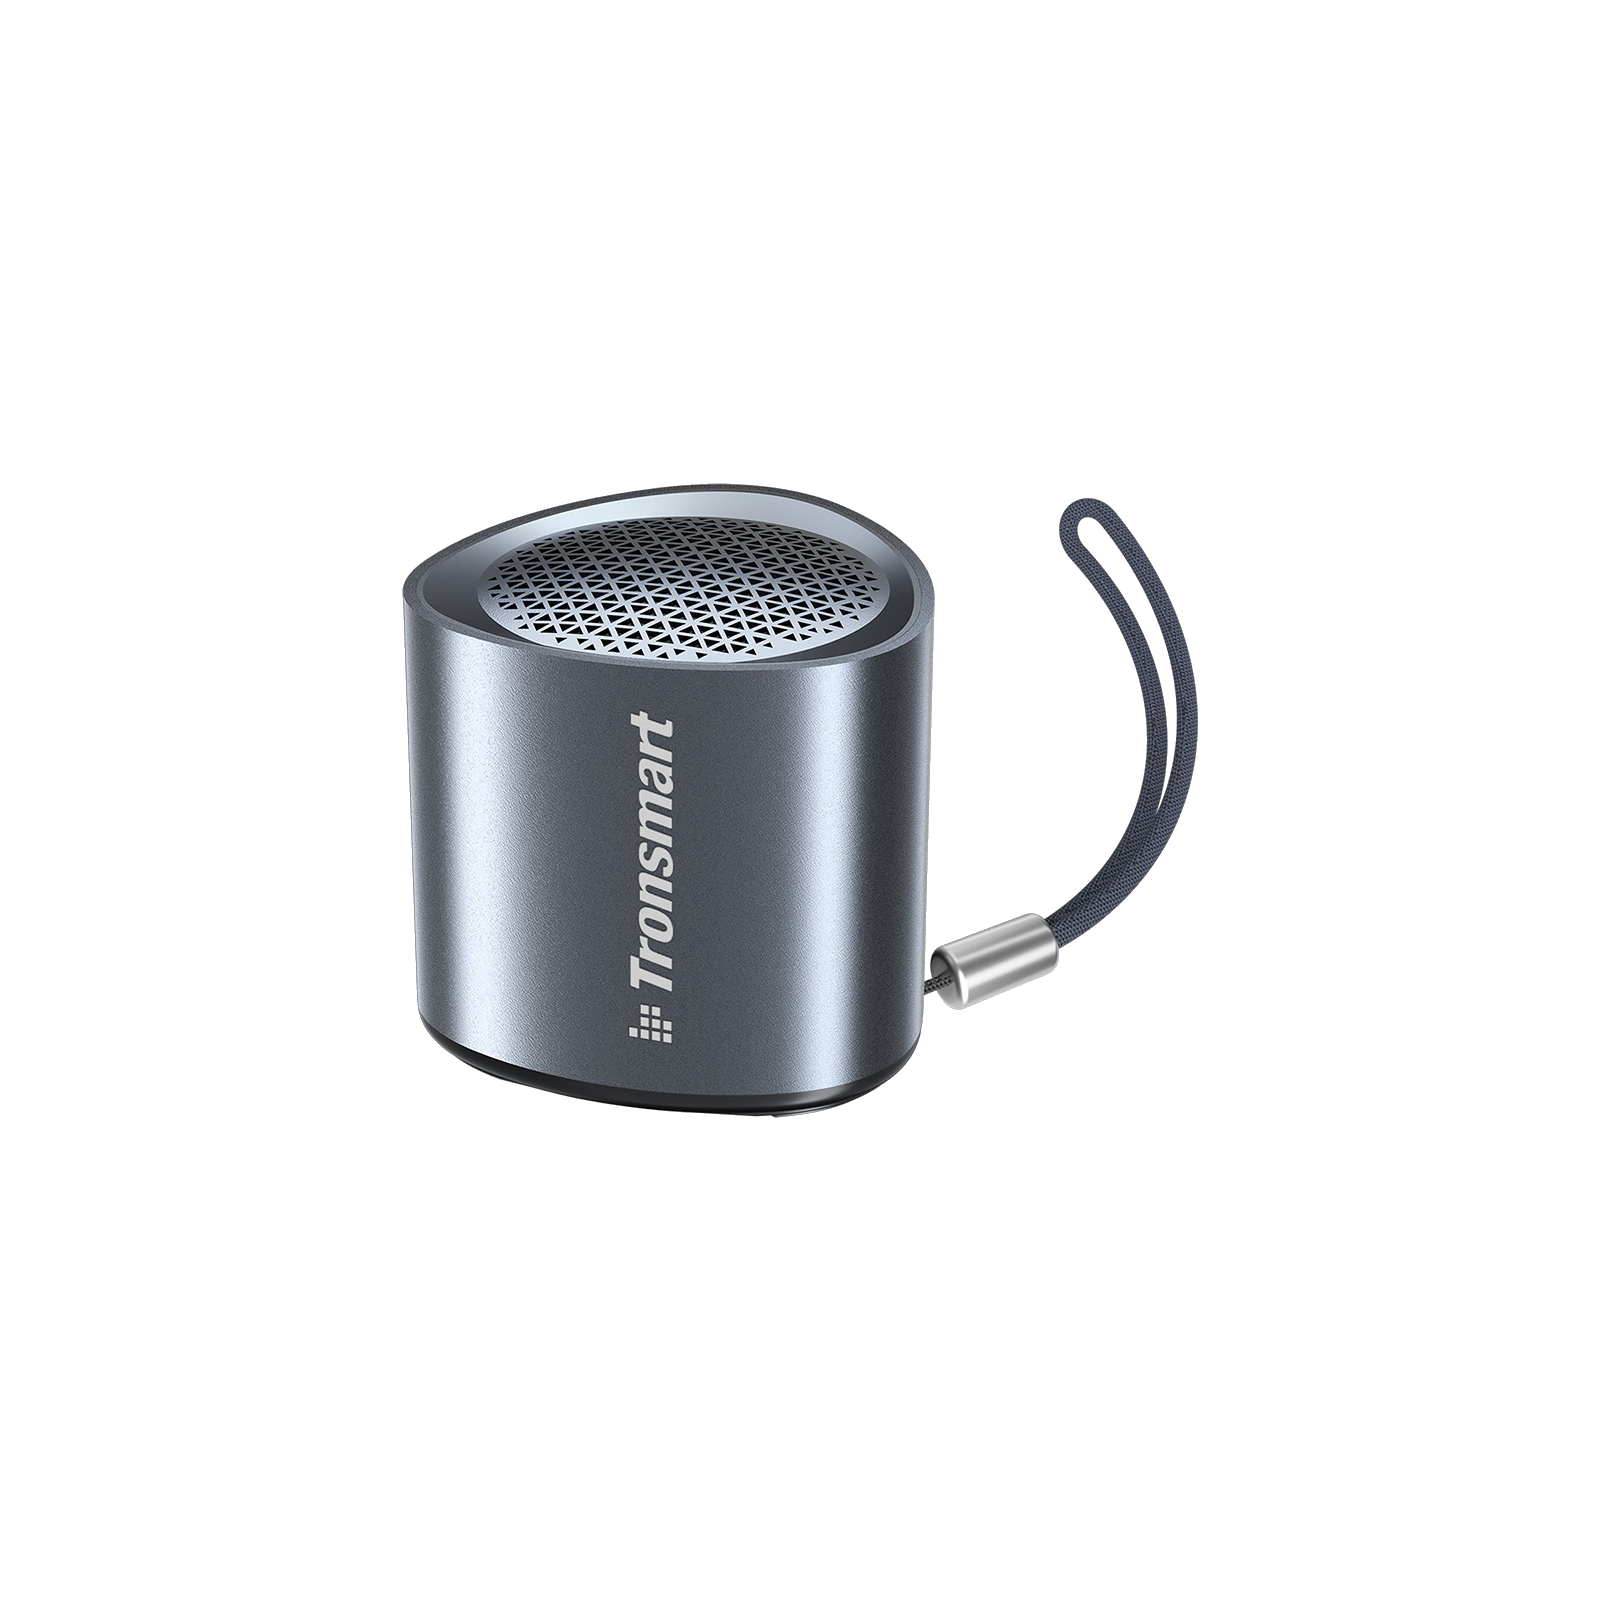 Акустична система Tronsmart Nimo Mini Speaker Gold (985908)